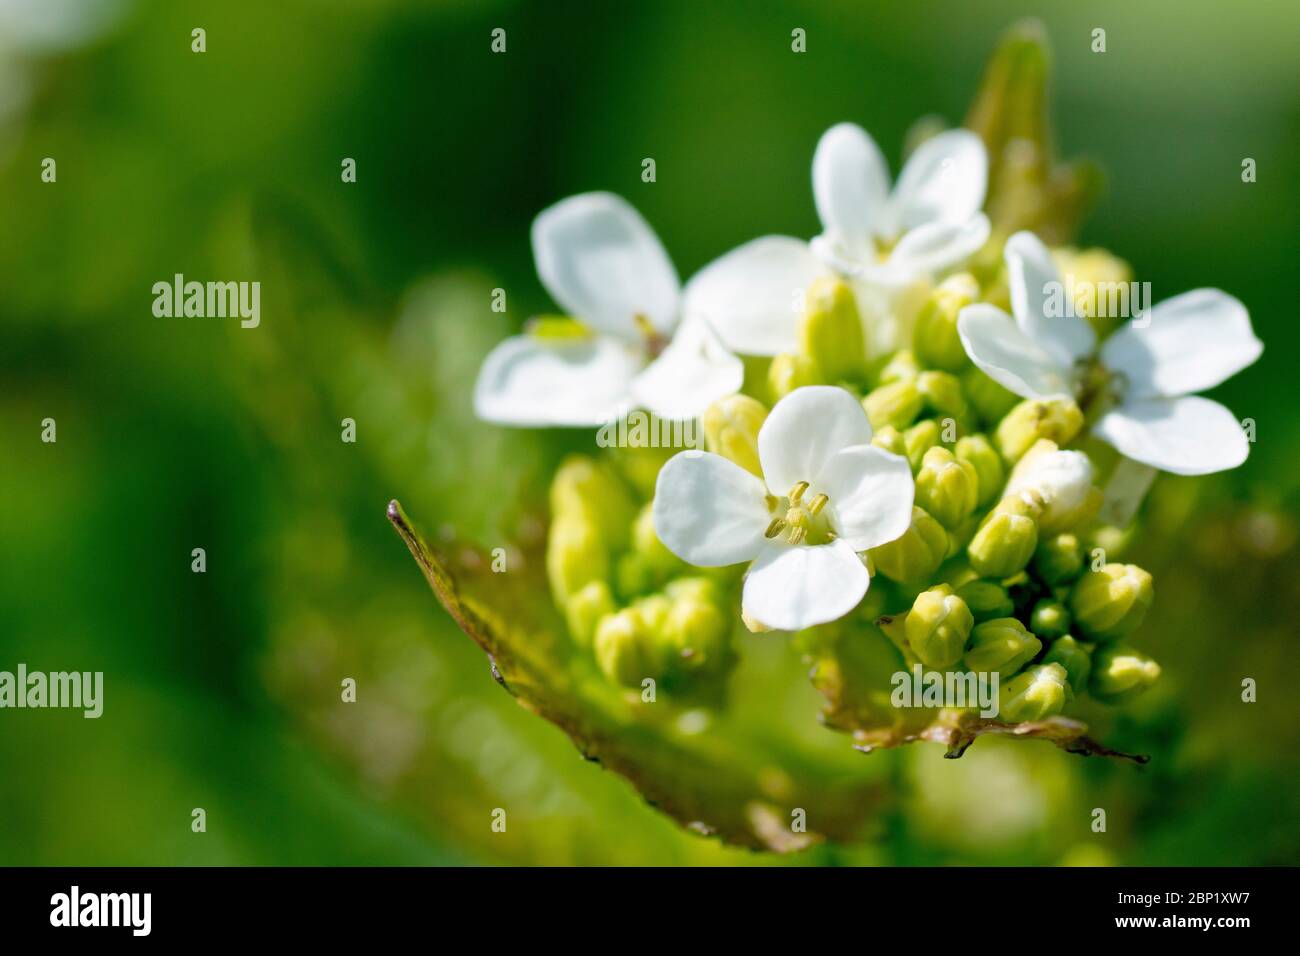 Knoblauchsenf (alliaria petiolata), auch bekannt als Jack by the Hedge, Nahaufnahme zeigt den Blütenkopf, wie die Blumen beginnen zu erscheinen. Stockfoto